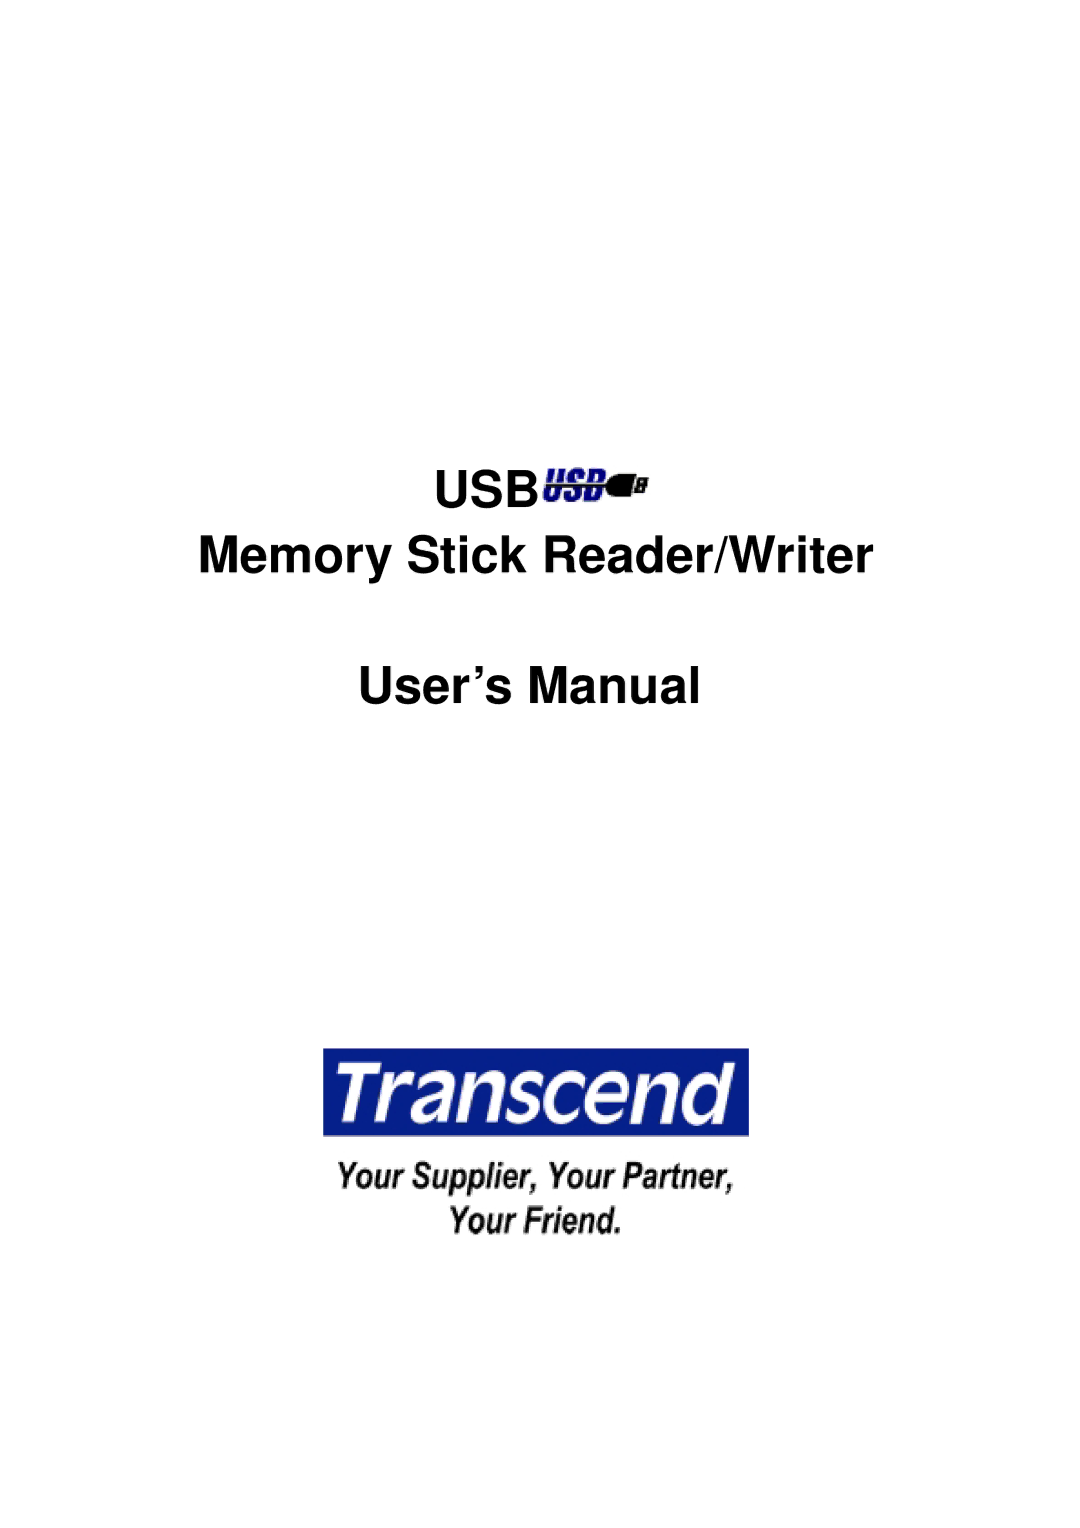 Transcend Information Memory Stick Reader/Writer user manual Usb 